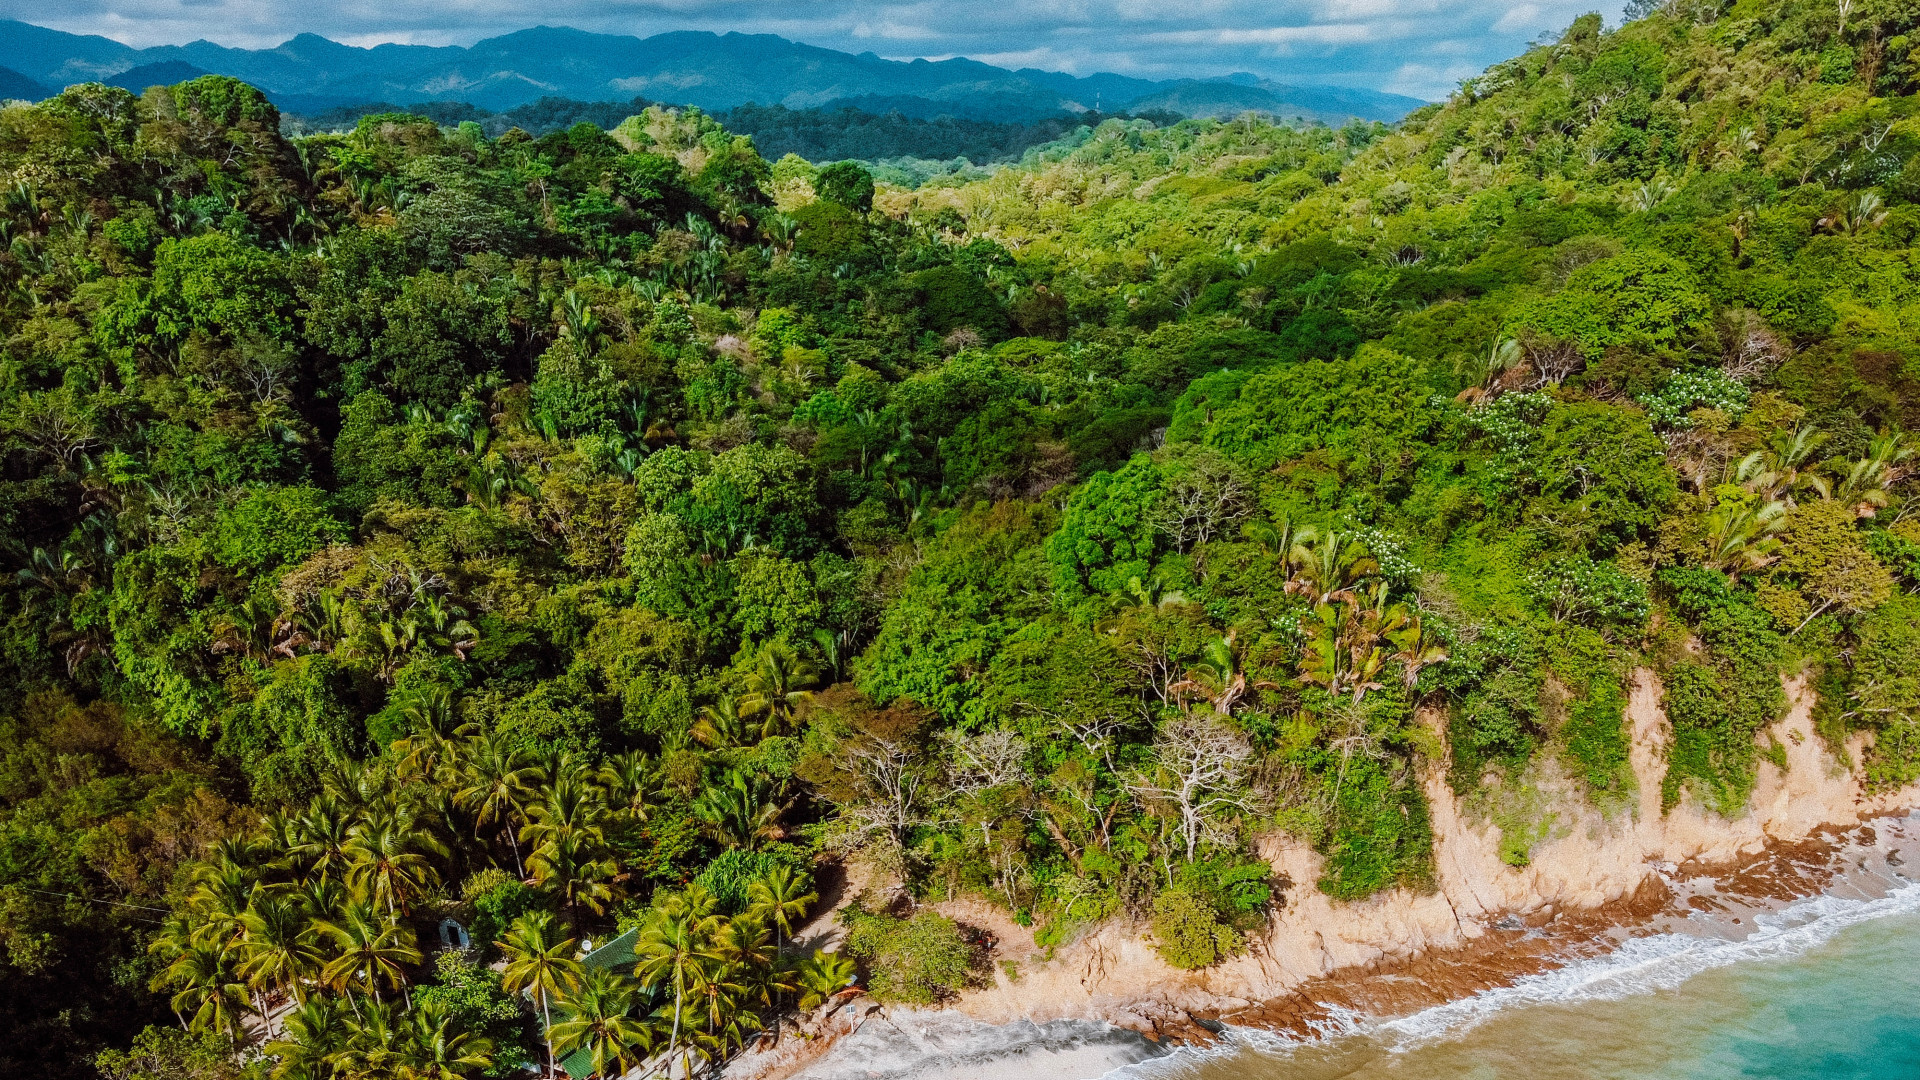 Explorez le Costa Rica : suivez le guide !